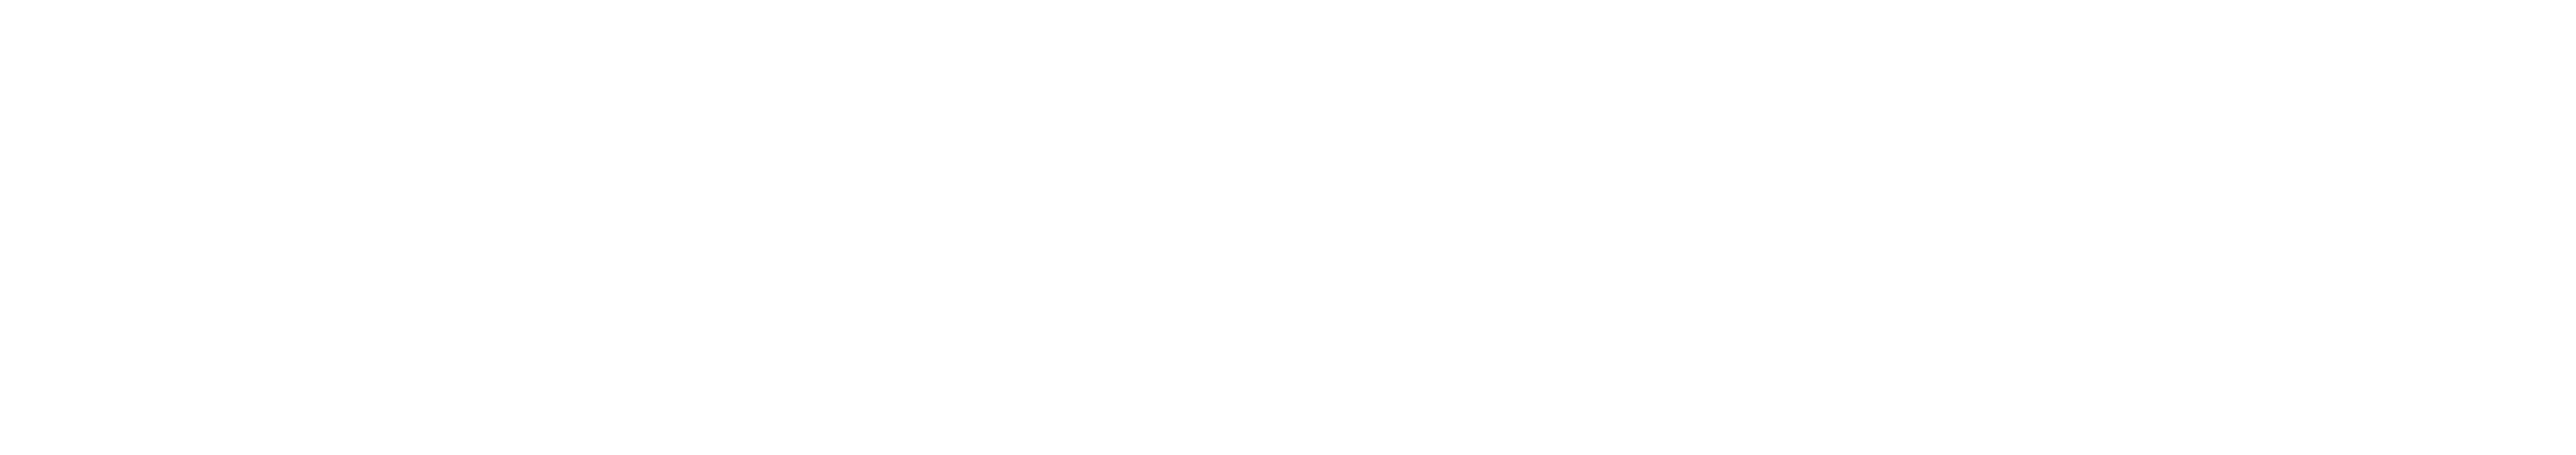 Viant Logo - About Viant link